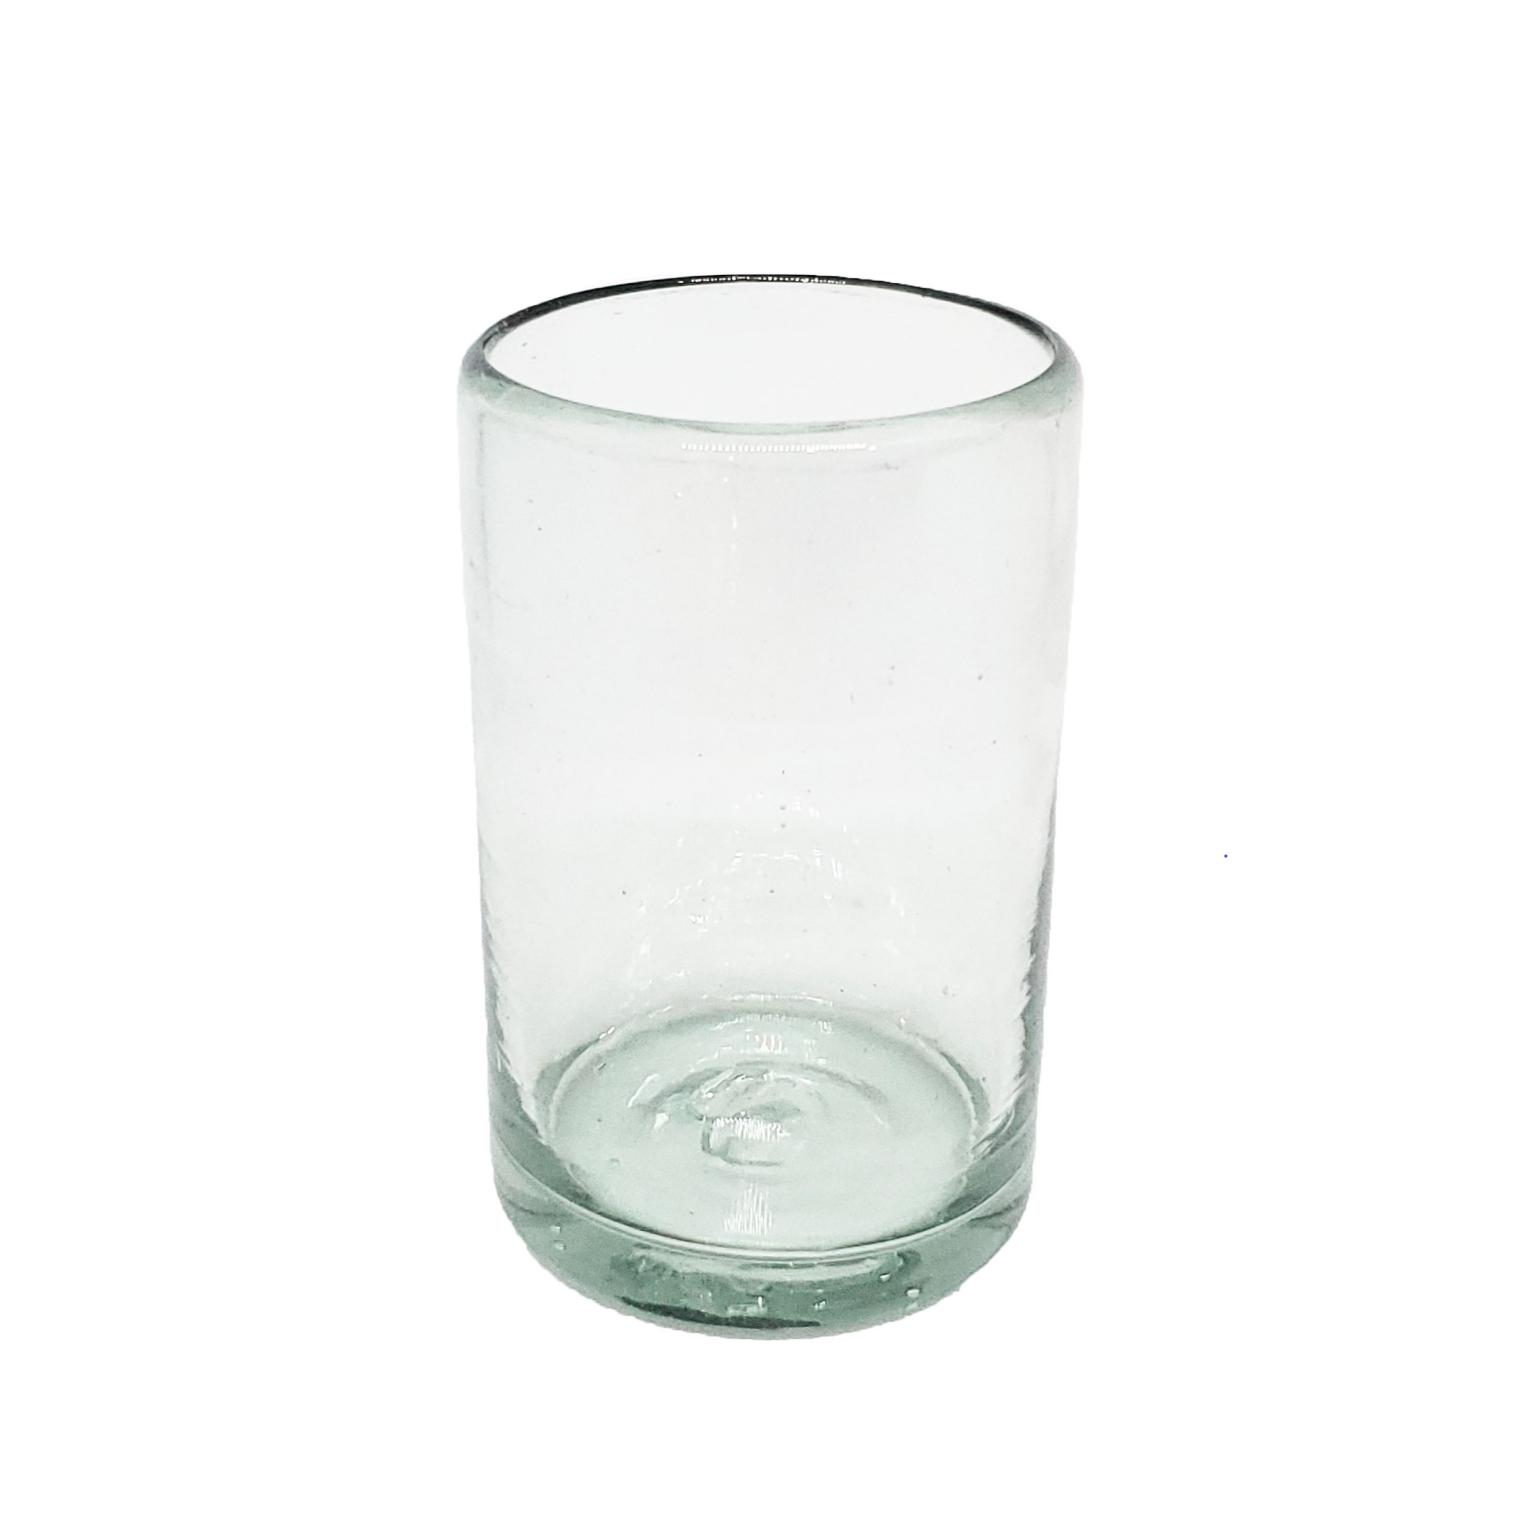 Ofertas / Juego de 6 vasos Jugo 9oz Transparentes / stos artesanales vasos le darn un toque clsico a su bebida favorita.